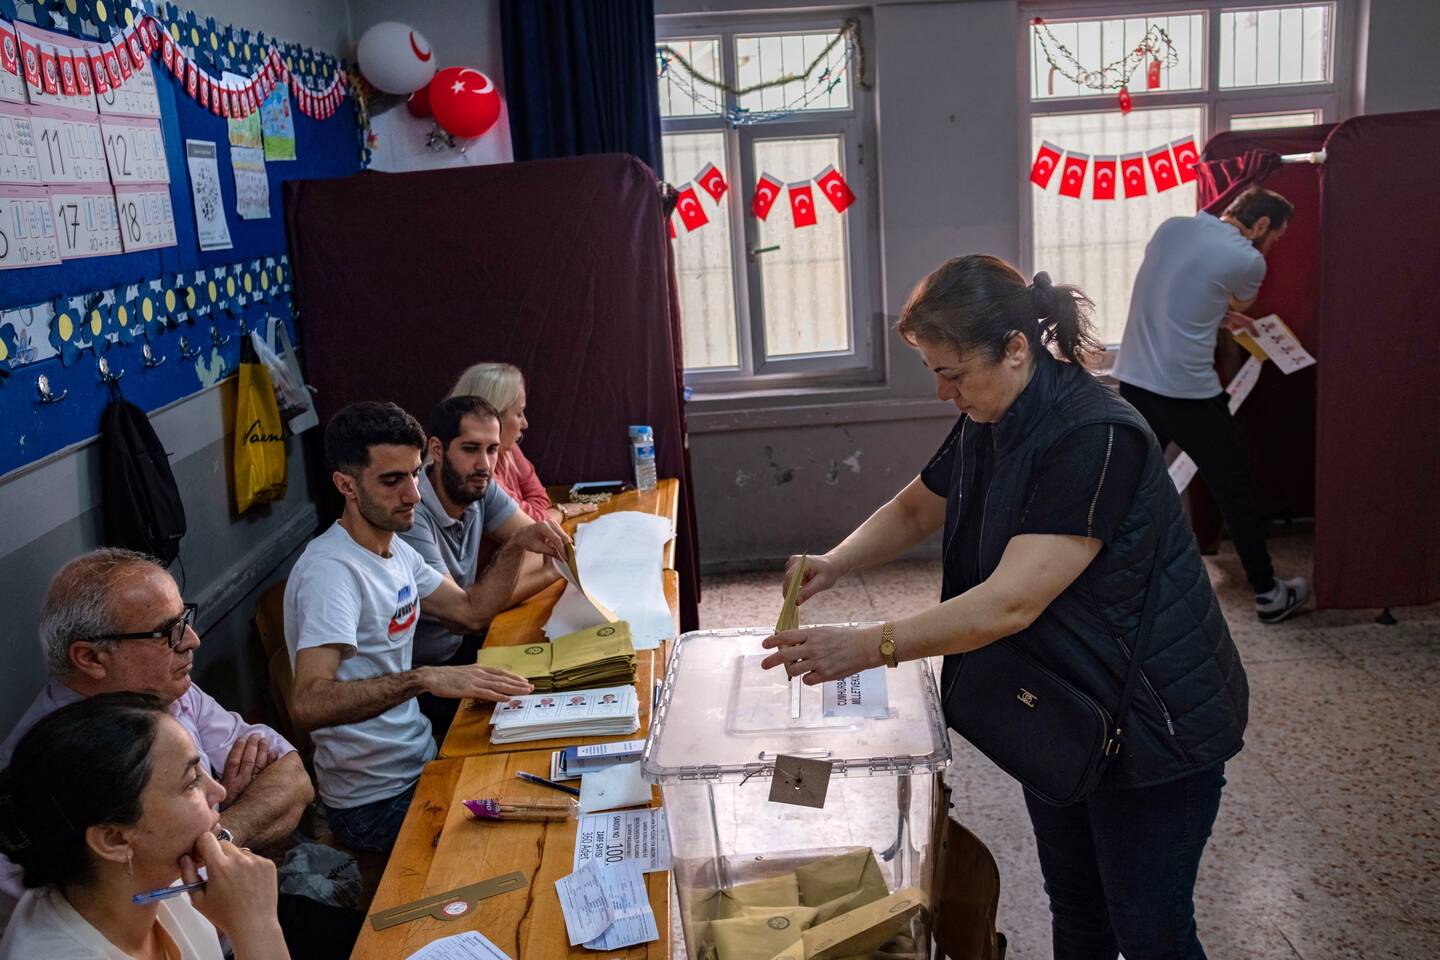 Les résultats préliminaires montrent qu'Erdogan perd la majorité lors des élections très disputées en Turquie